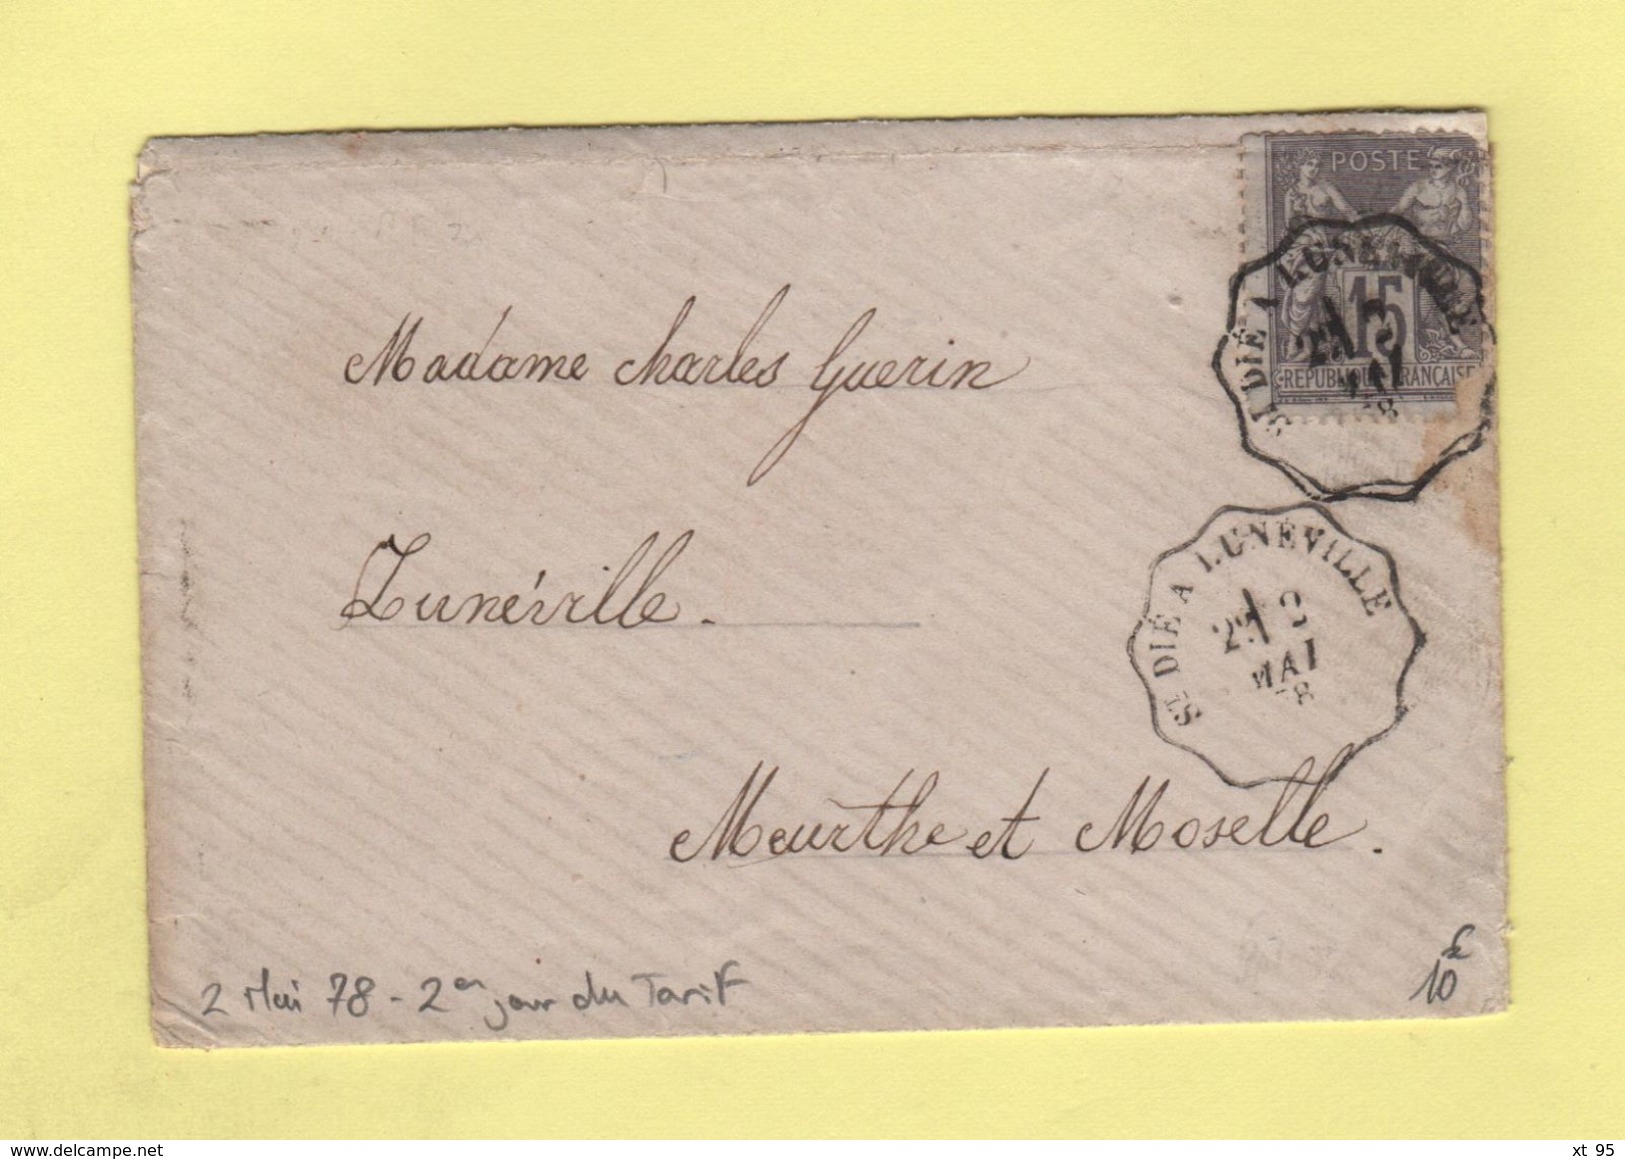 Convoyeur - St Die A Luneville - 2 Mai 1878 - 2eme Jour Du Tarif De La Lettre à 15c - Spoorwegpost